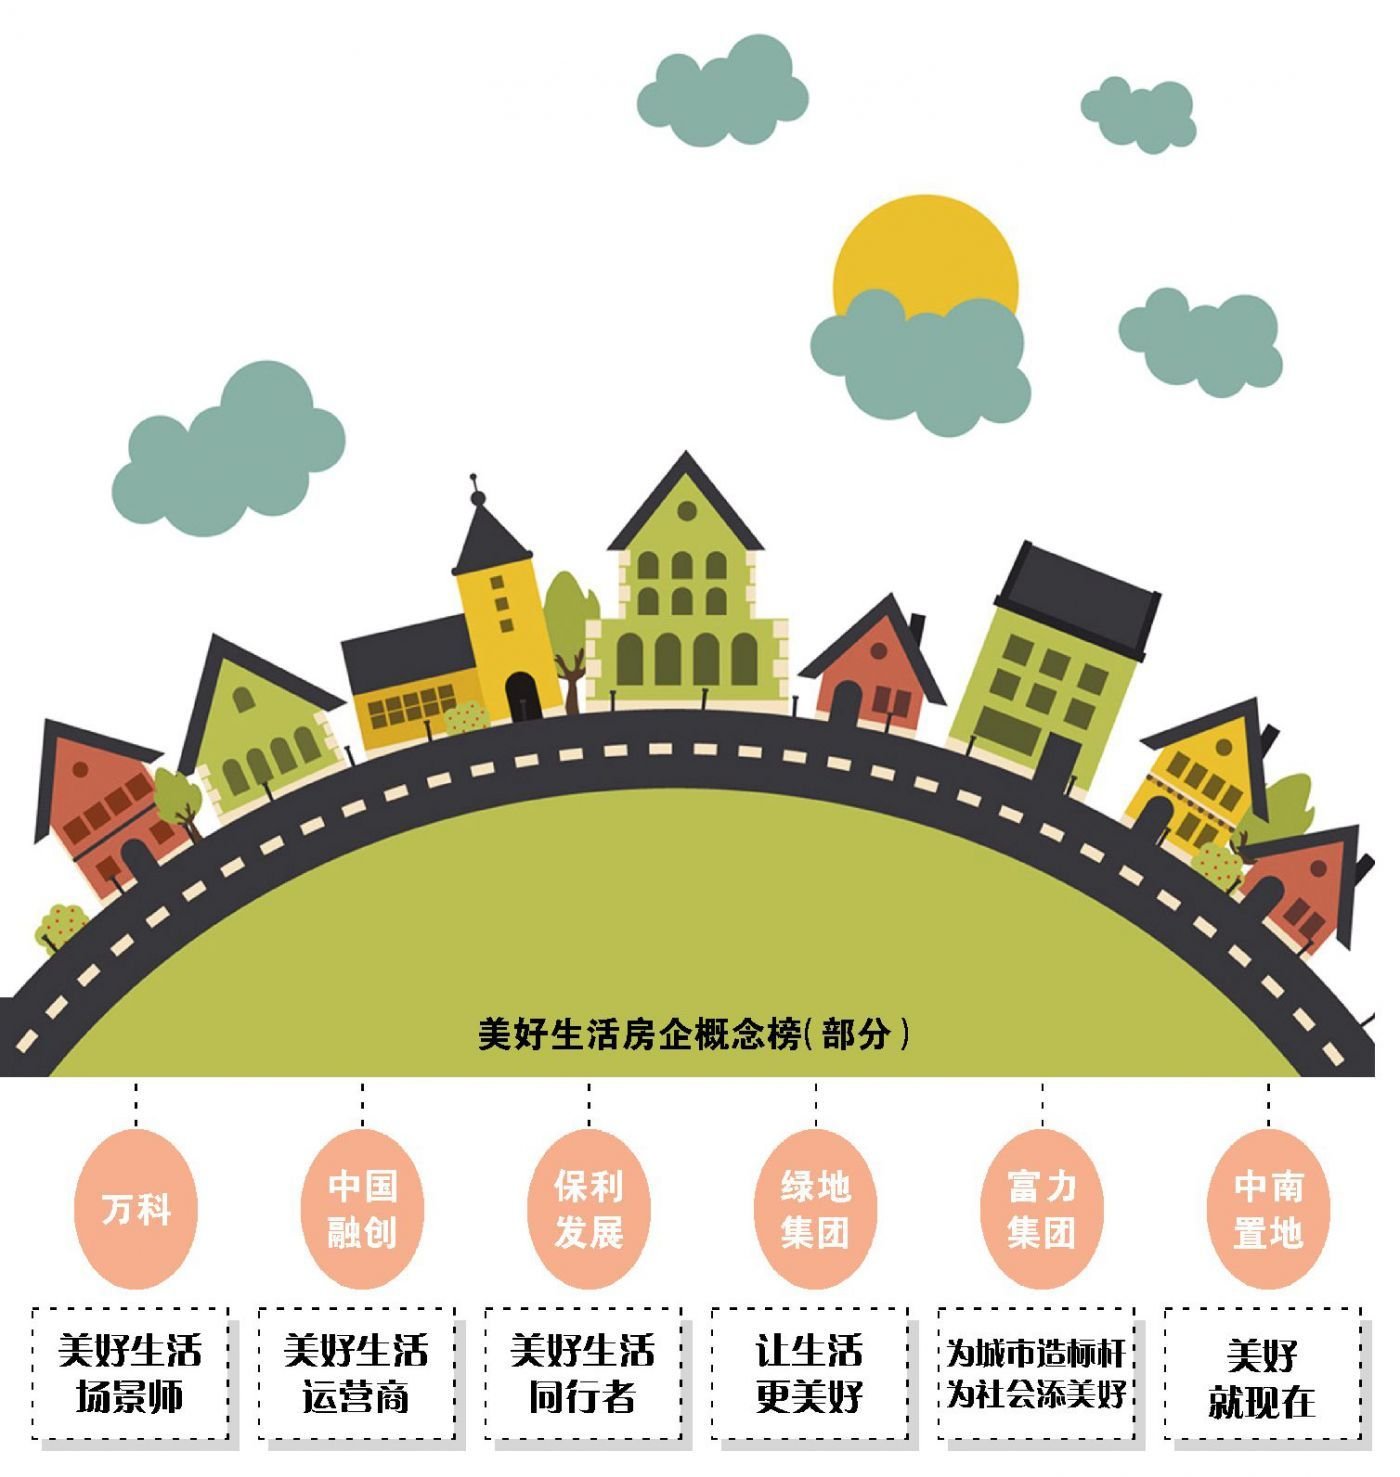 2019中国房企社会责任报告 美好生活：房企客户为先的新通道